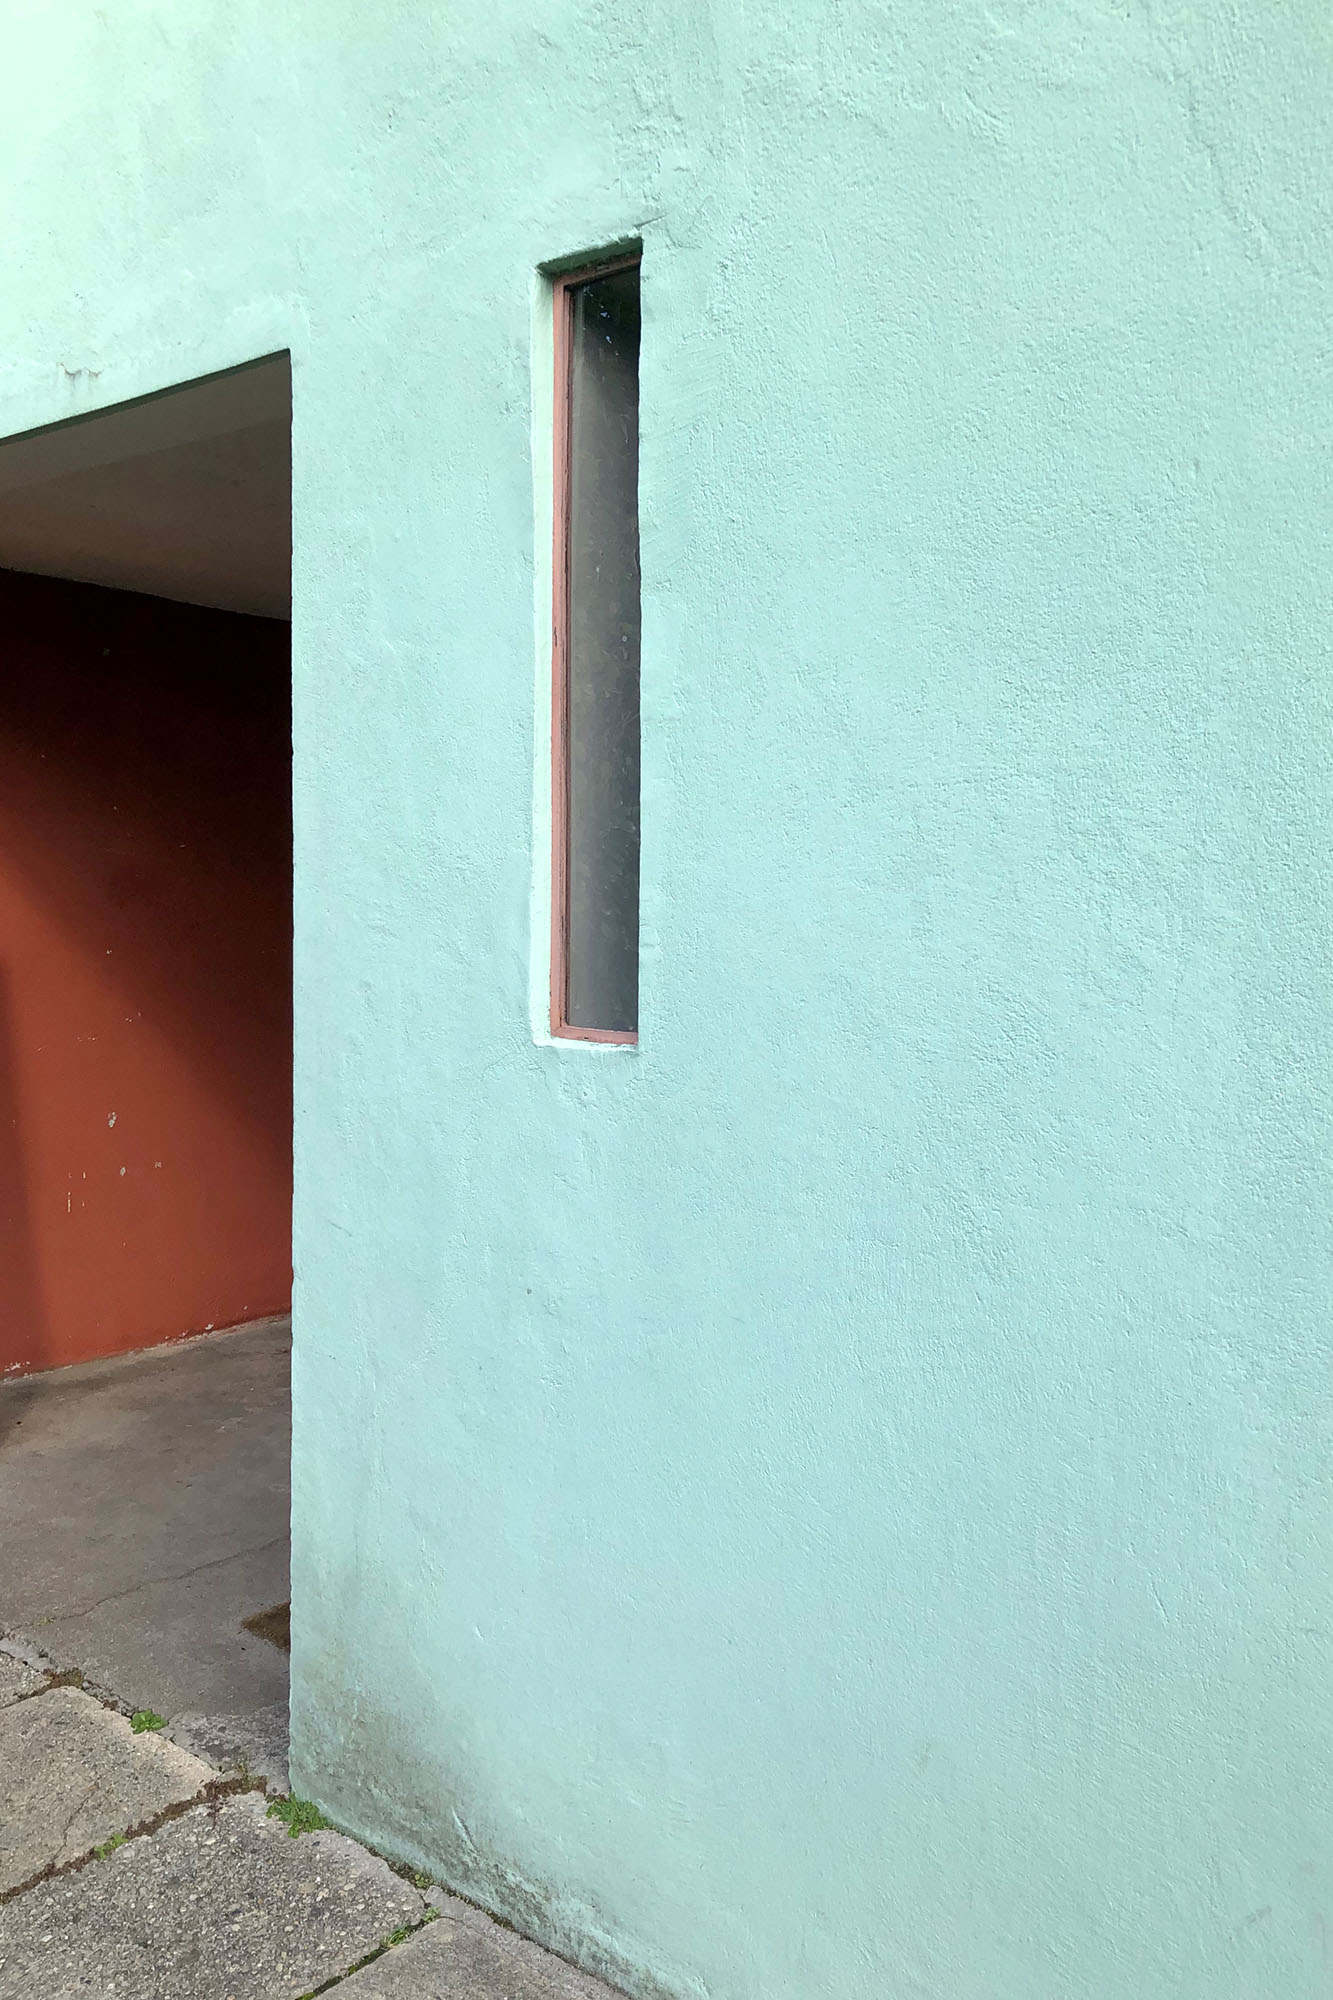 Cité Frugès – Horizontblau und jadegrün (Le Corbusier) (Pierre Jeanneret) [Pessac]